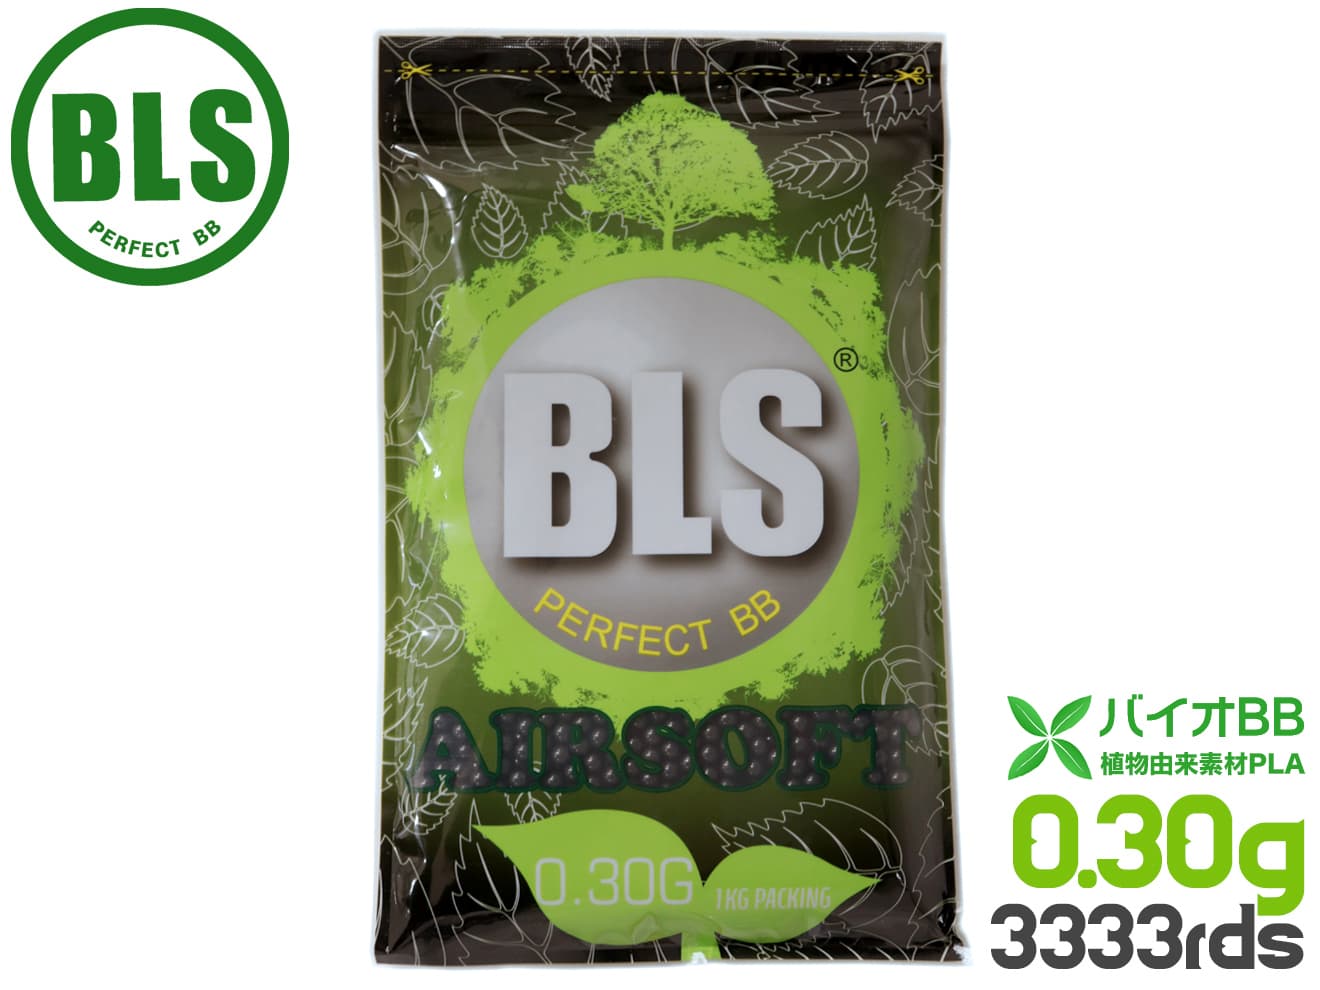 BLS 高品質PLA バイオBB弾 0.30g 3333発 1kg 植物由来バイオビービー弾 高精度 プラスチック 環境に優しい アウトドアフィールド